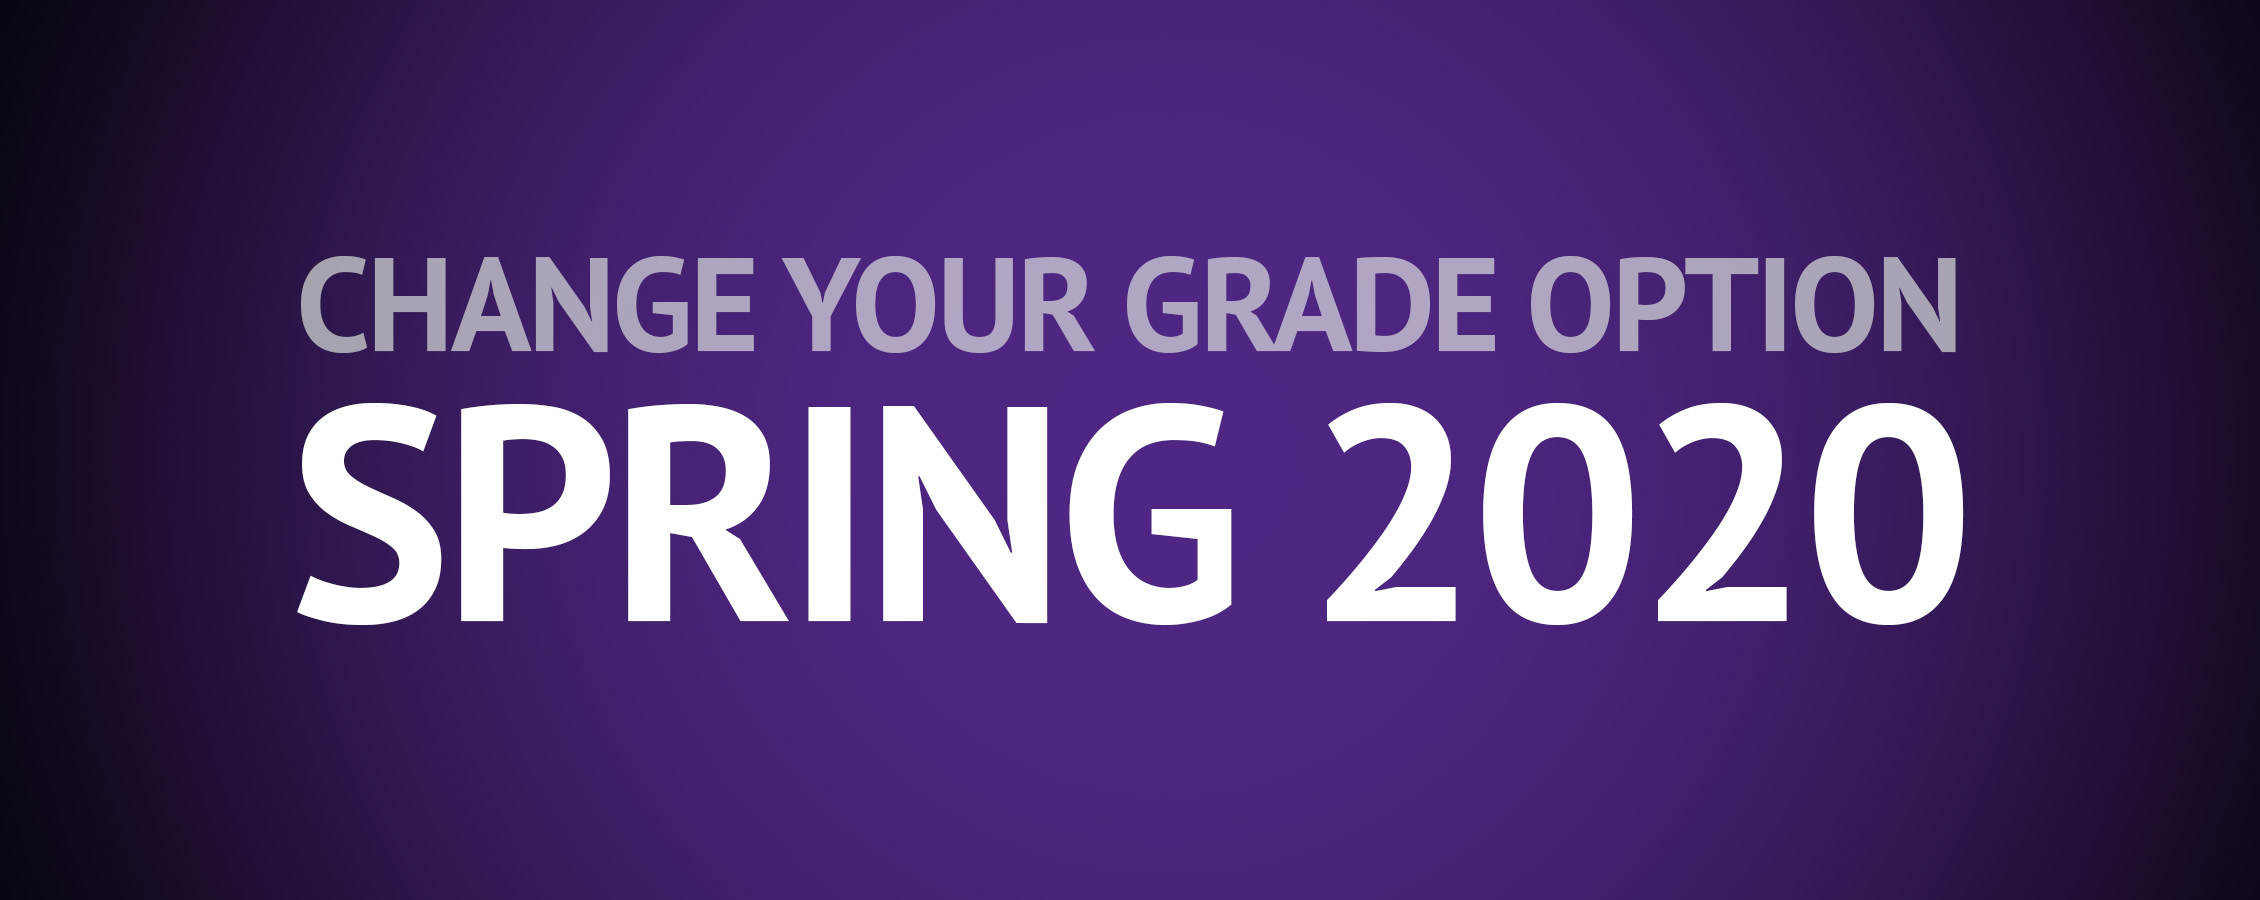 Spring 2020 grade change option